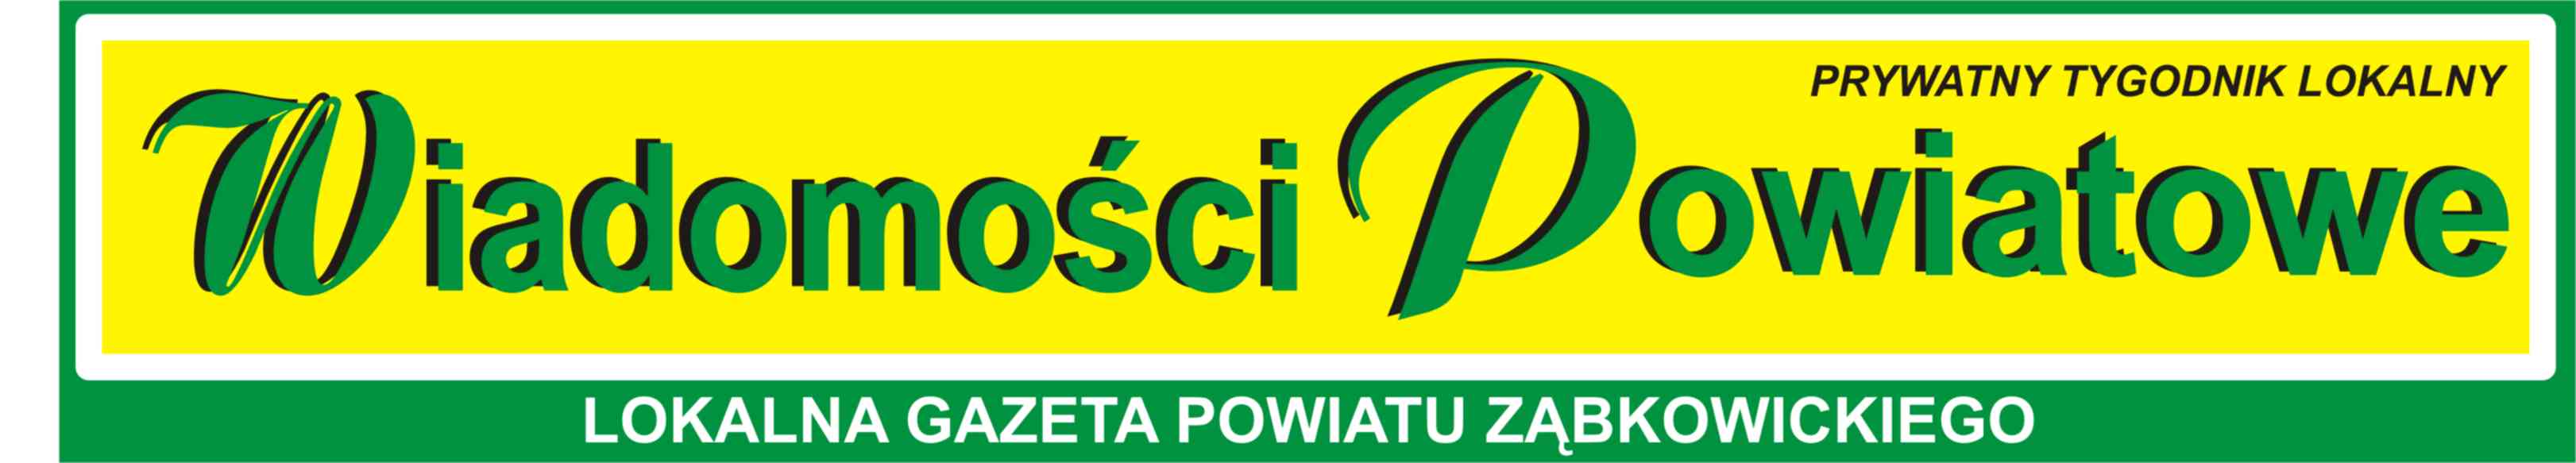 logo gazety Wiadomości Powiatowe